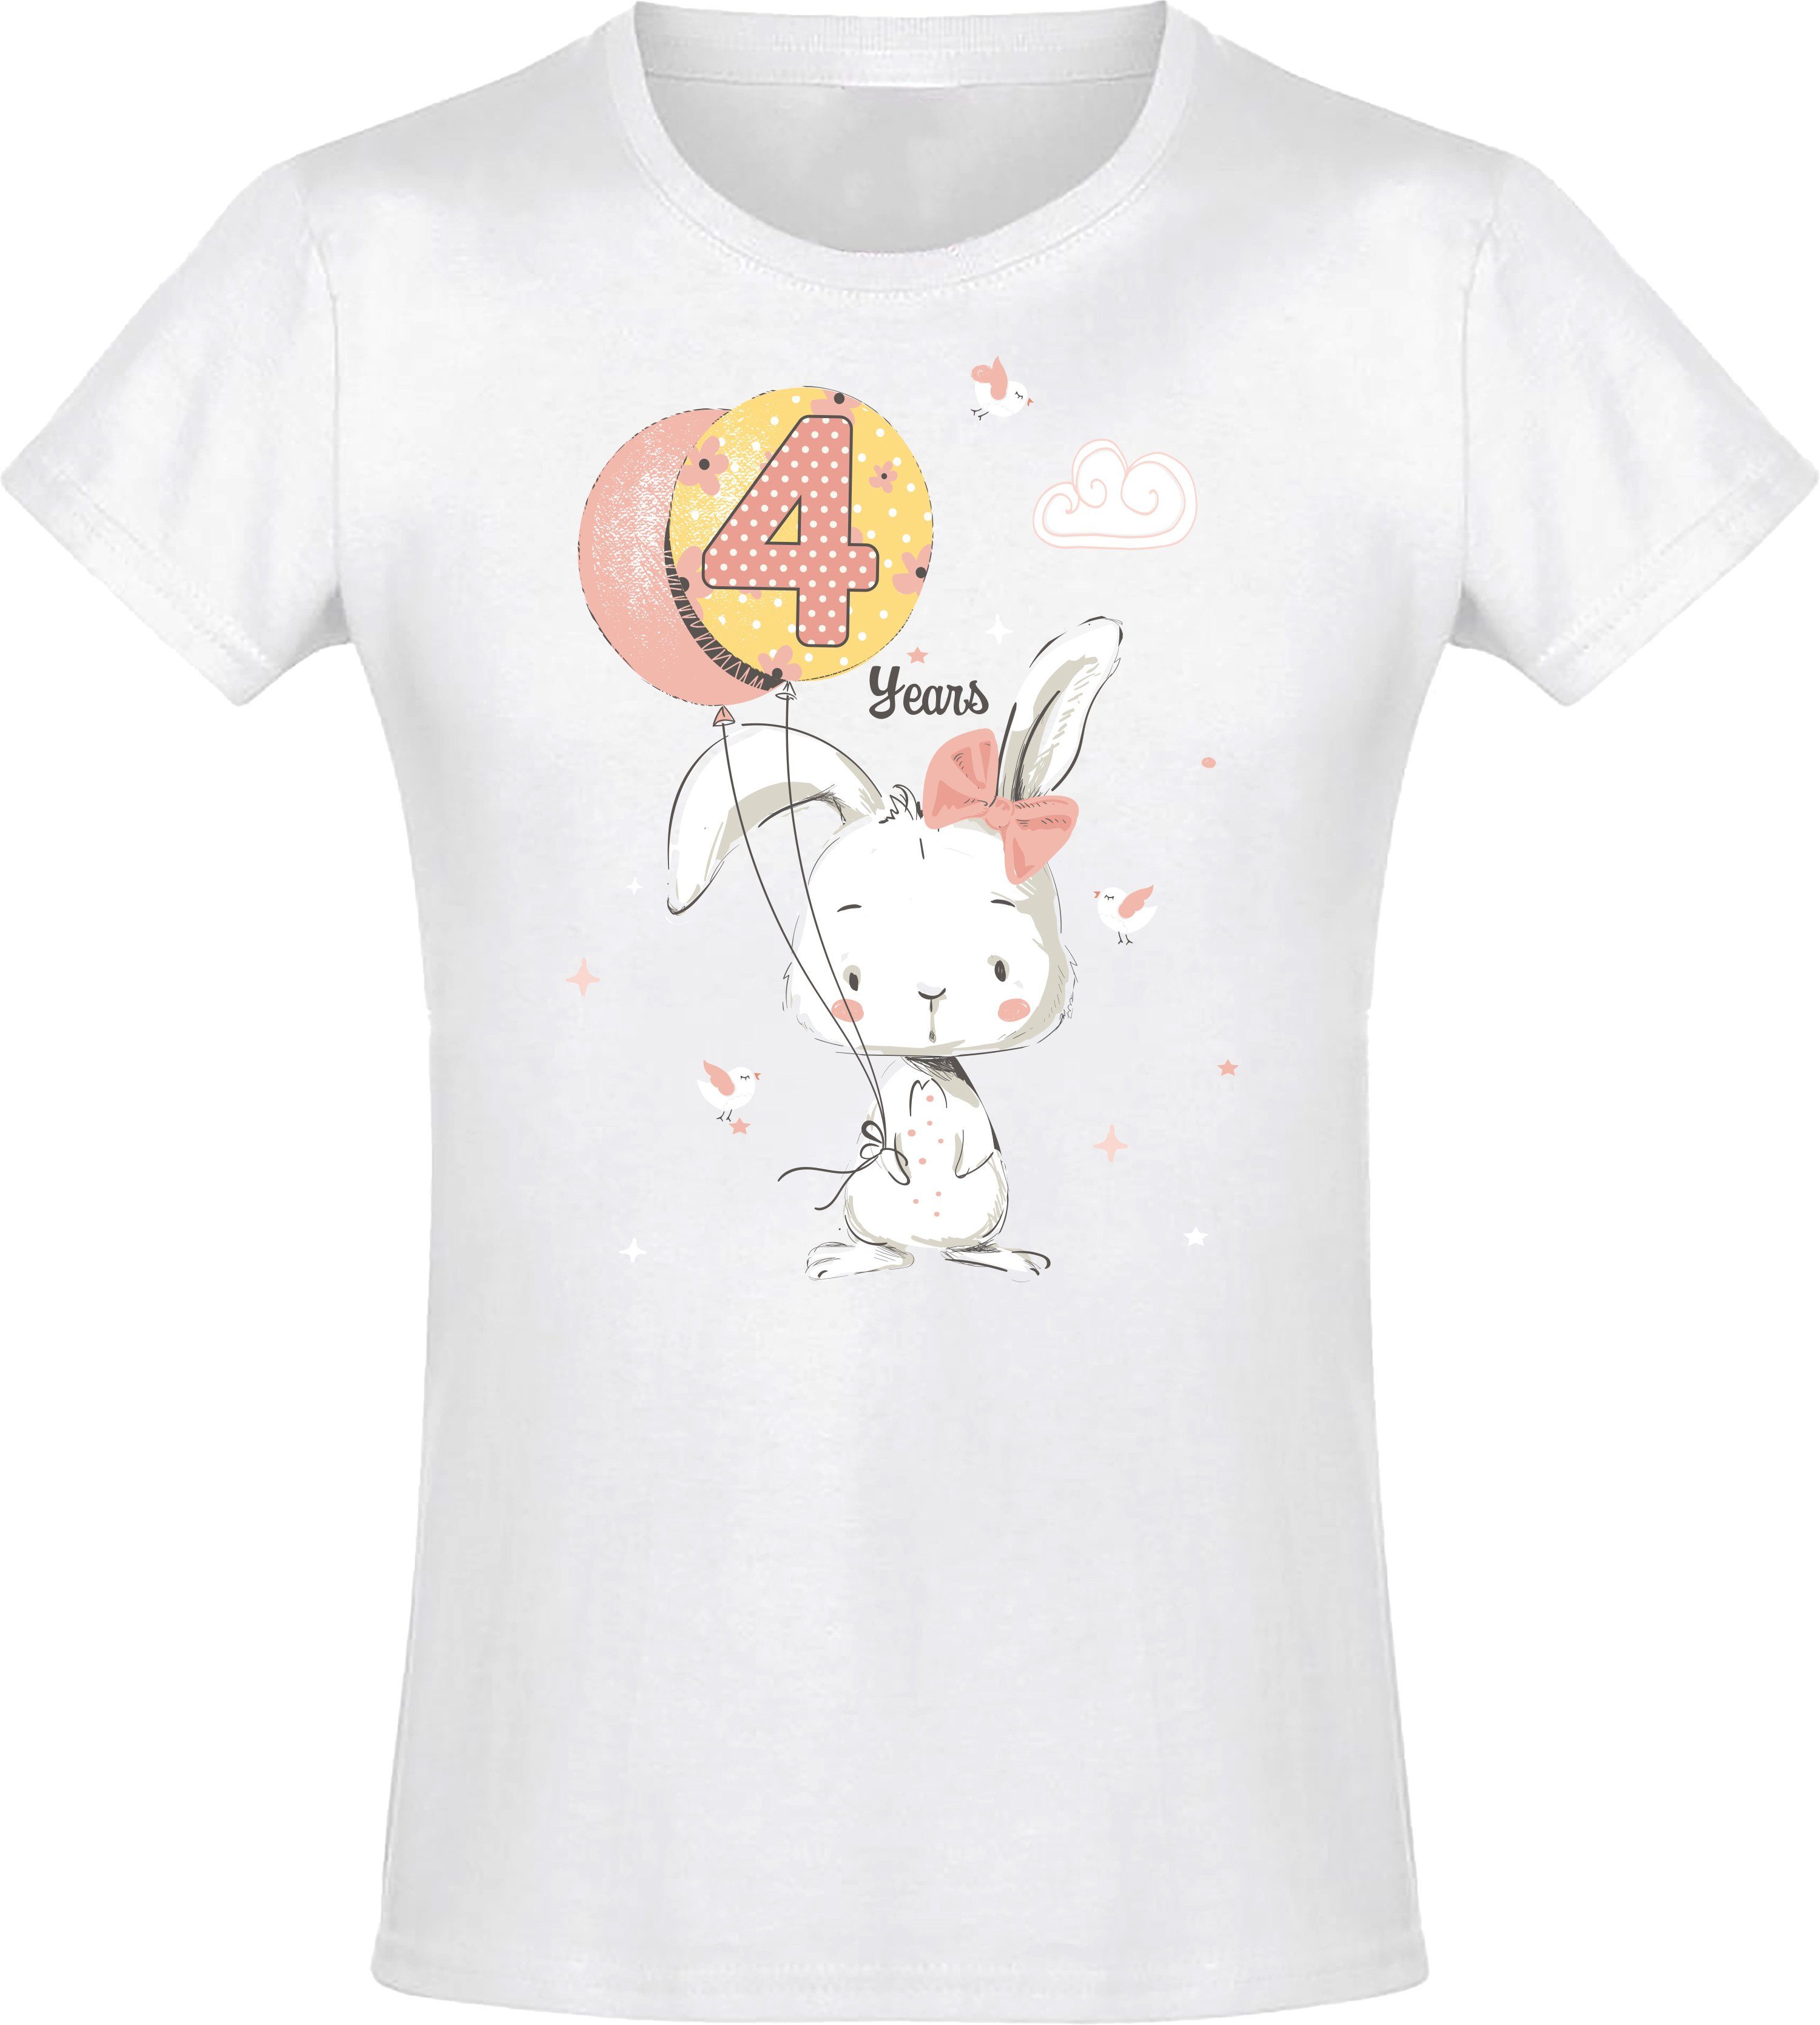 Baddery Print-Shirt Geburstagsgeschenk für Mädchen : 4 Jahre mit Hase hochwertiger Siebdruck, aus Baumwolle Weiß